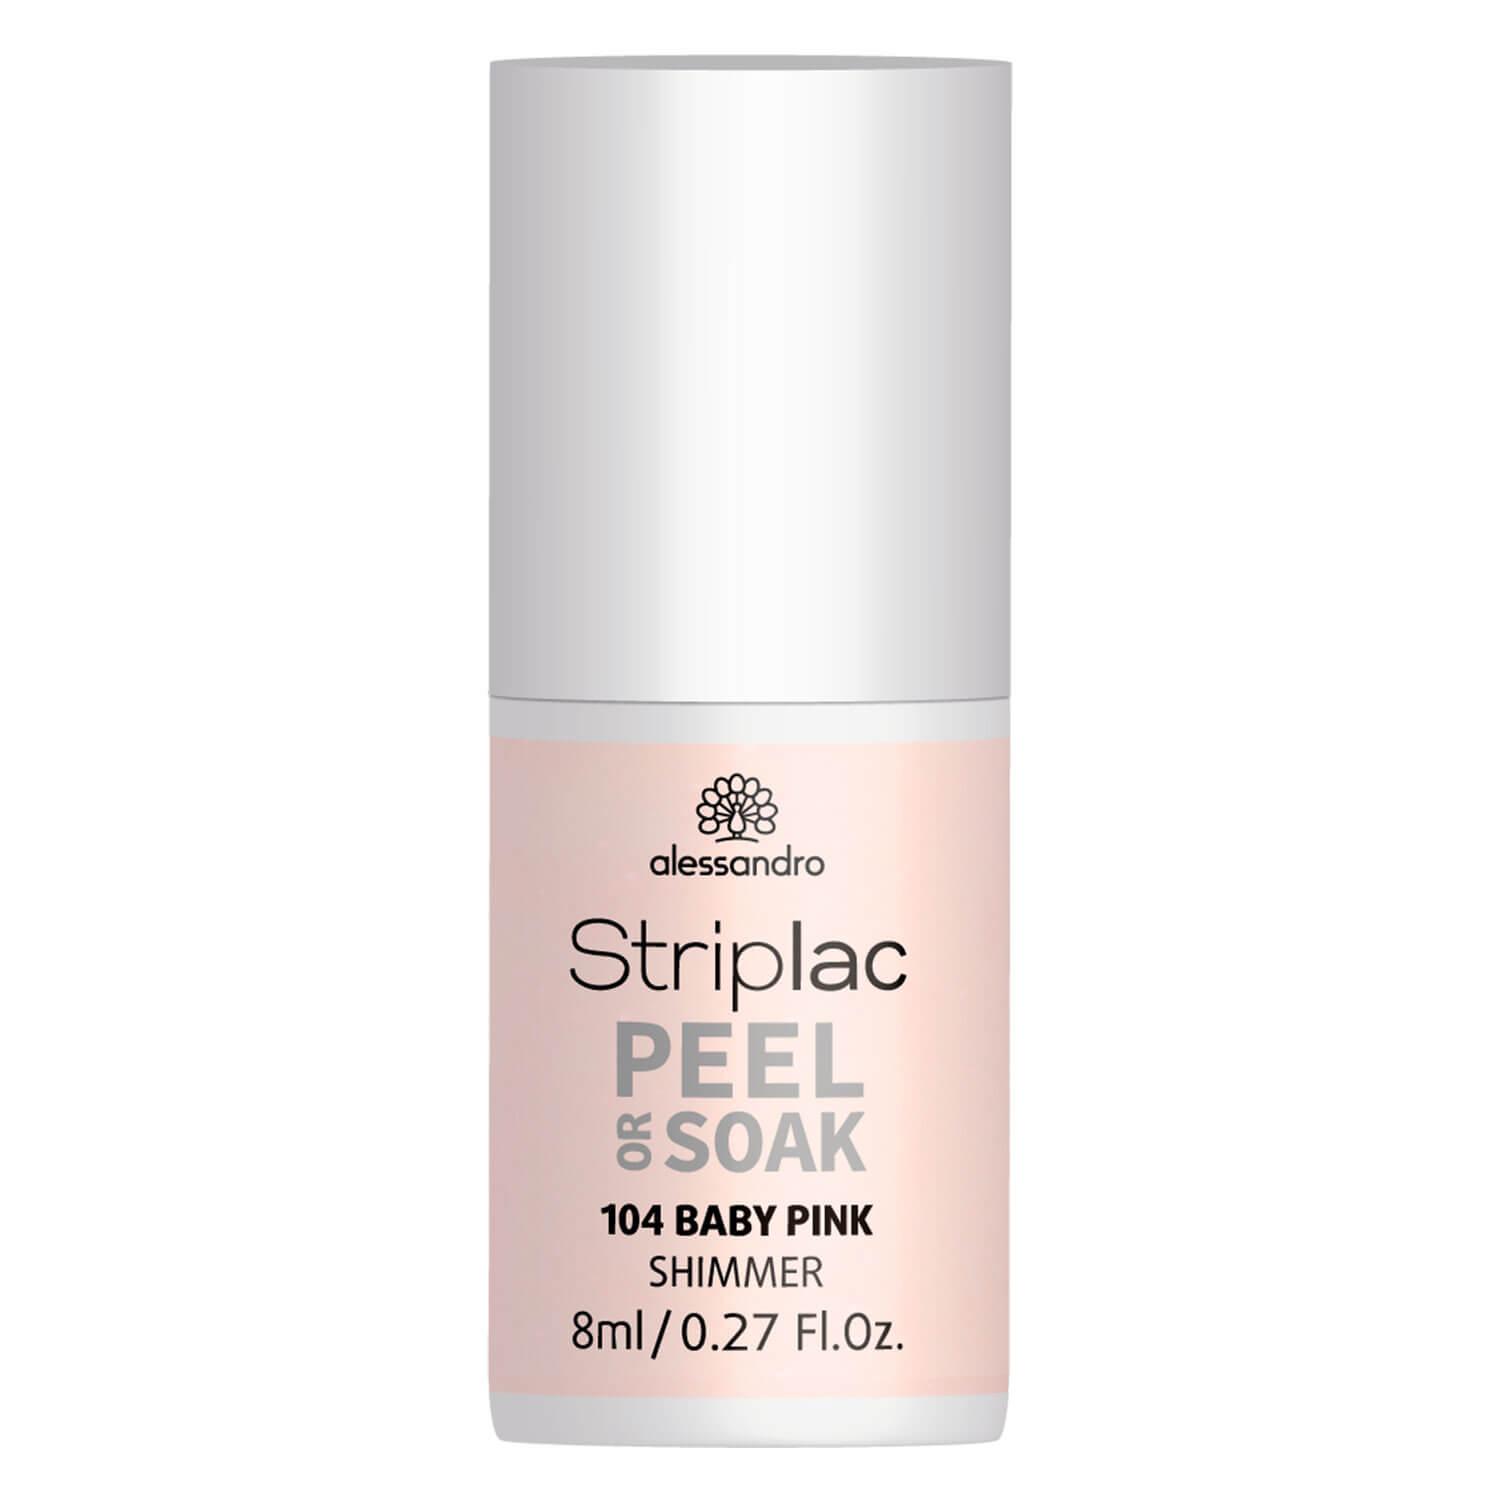 Striplac Peel or Soak - Baby Pink